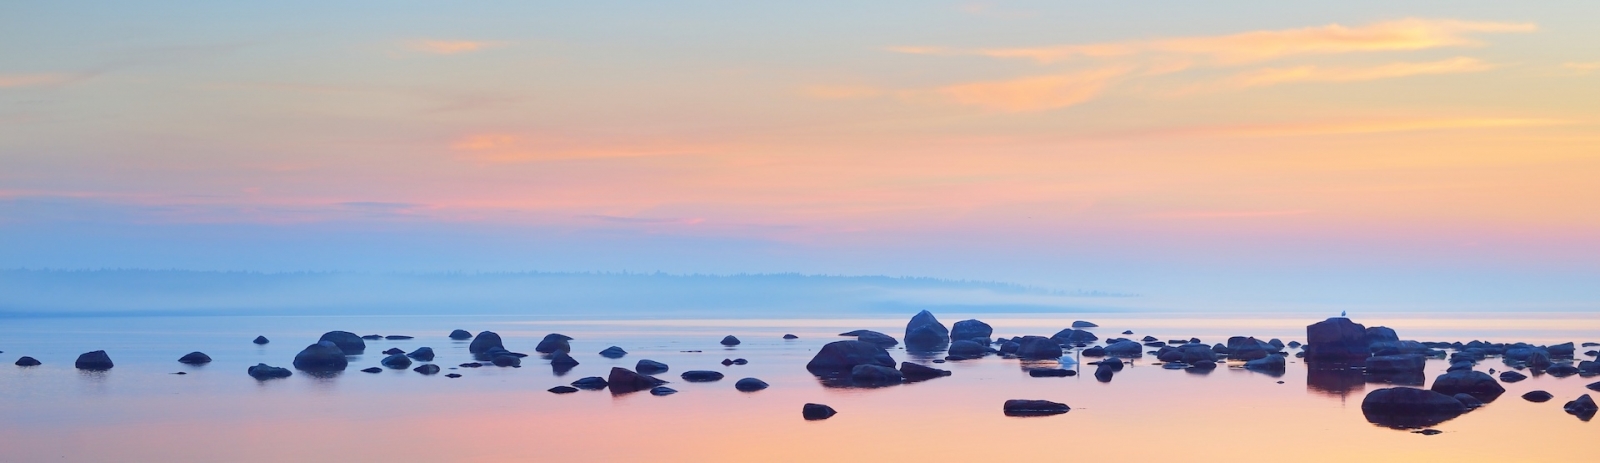 Rocce sulla costa di Kasmu (villaggio del capitano) al tramonto.  Estonia, Mar Baltico.  Cielo azzurro, nuvole rosa.  Vista panoramica.  Destinazioni di viaggio, vacanze, turismo ecologico